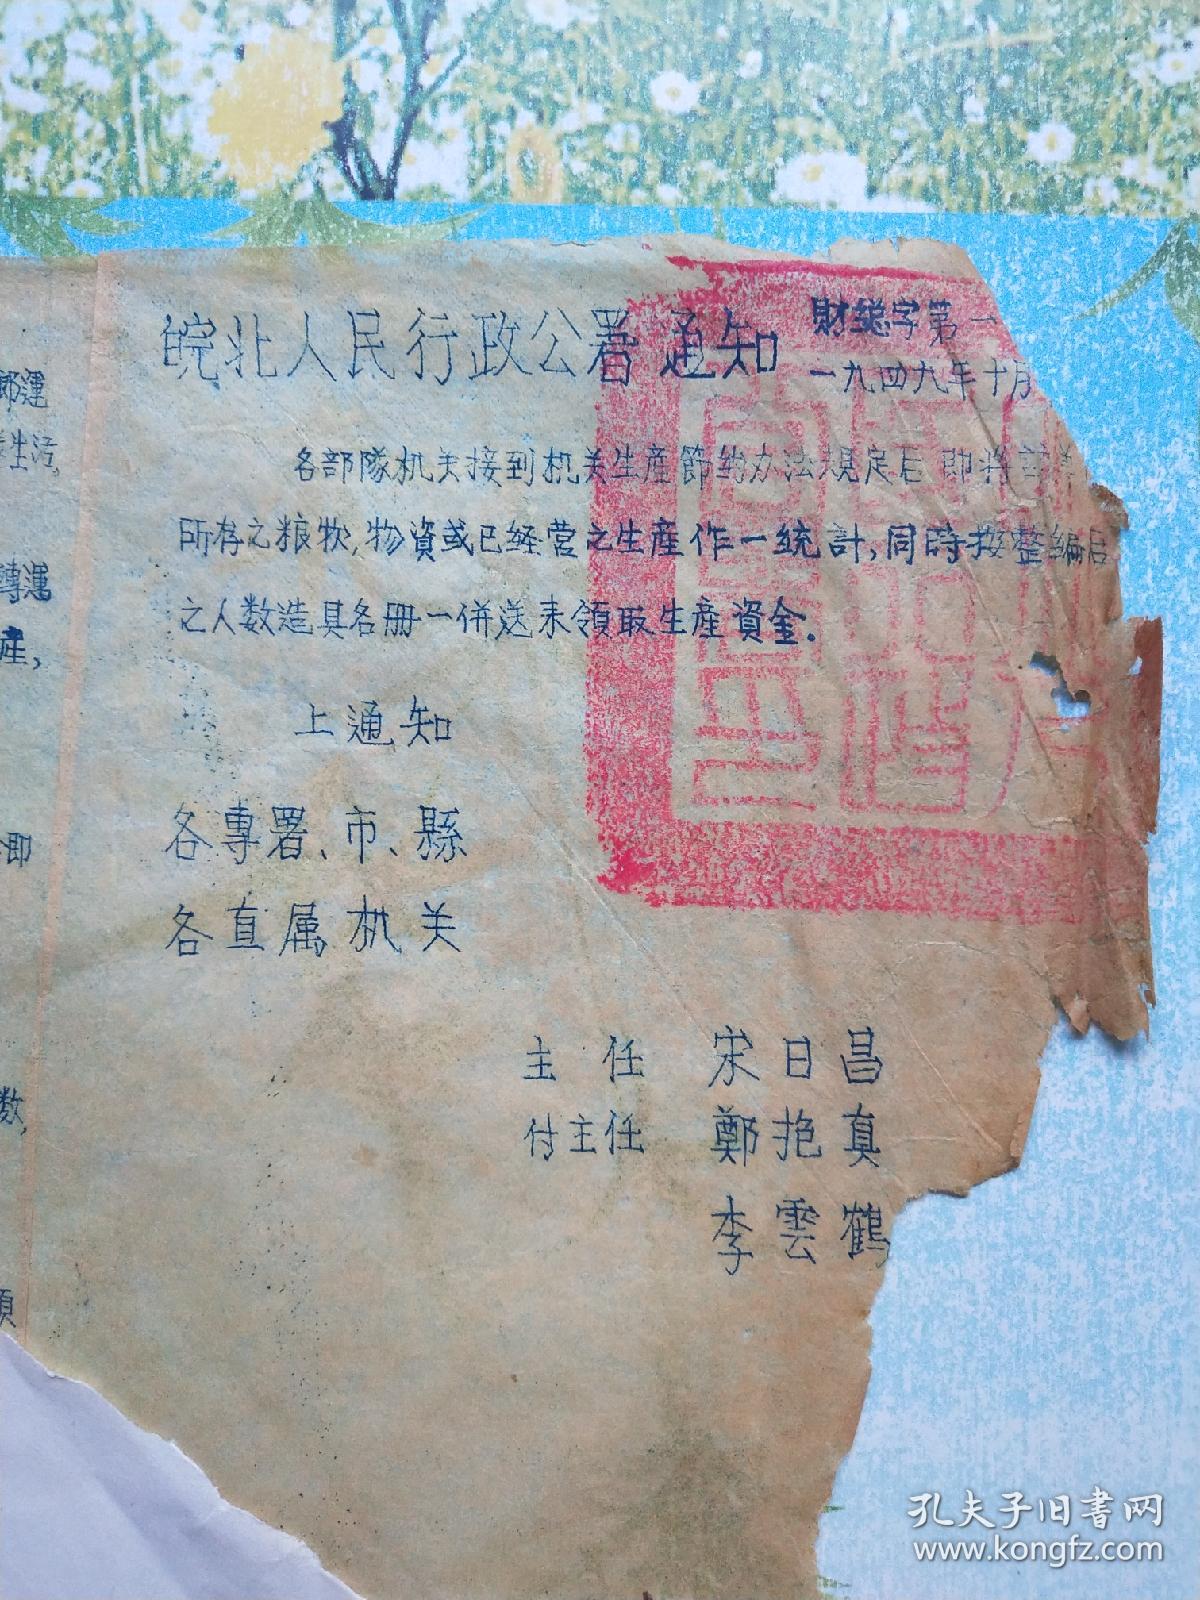 1949年皖北人民行政公署通知油印稿（宋日昌），有些破损，编号051